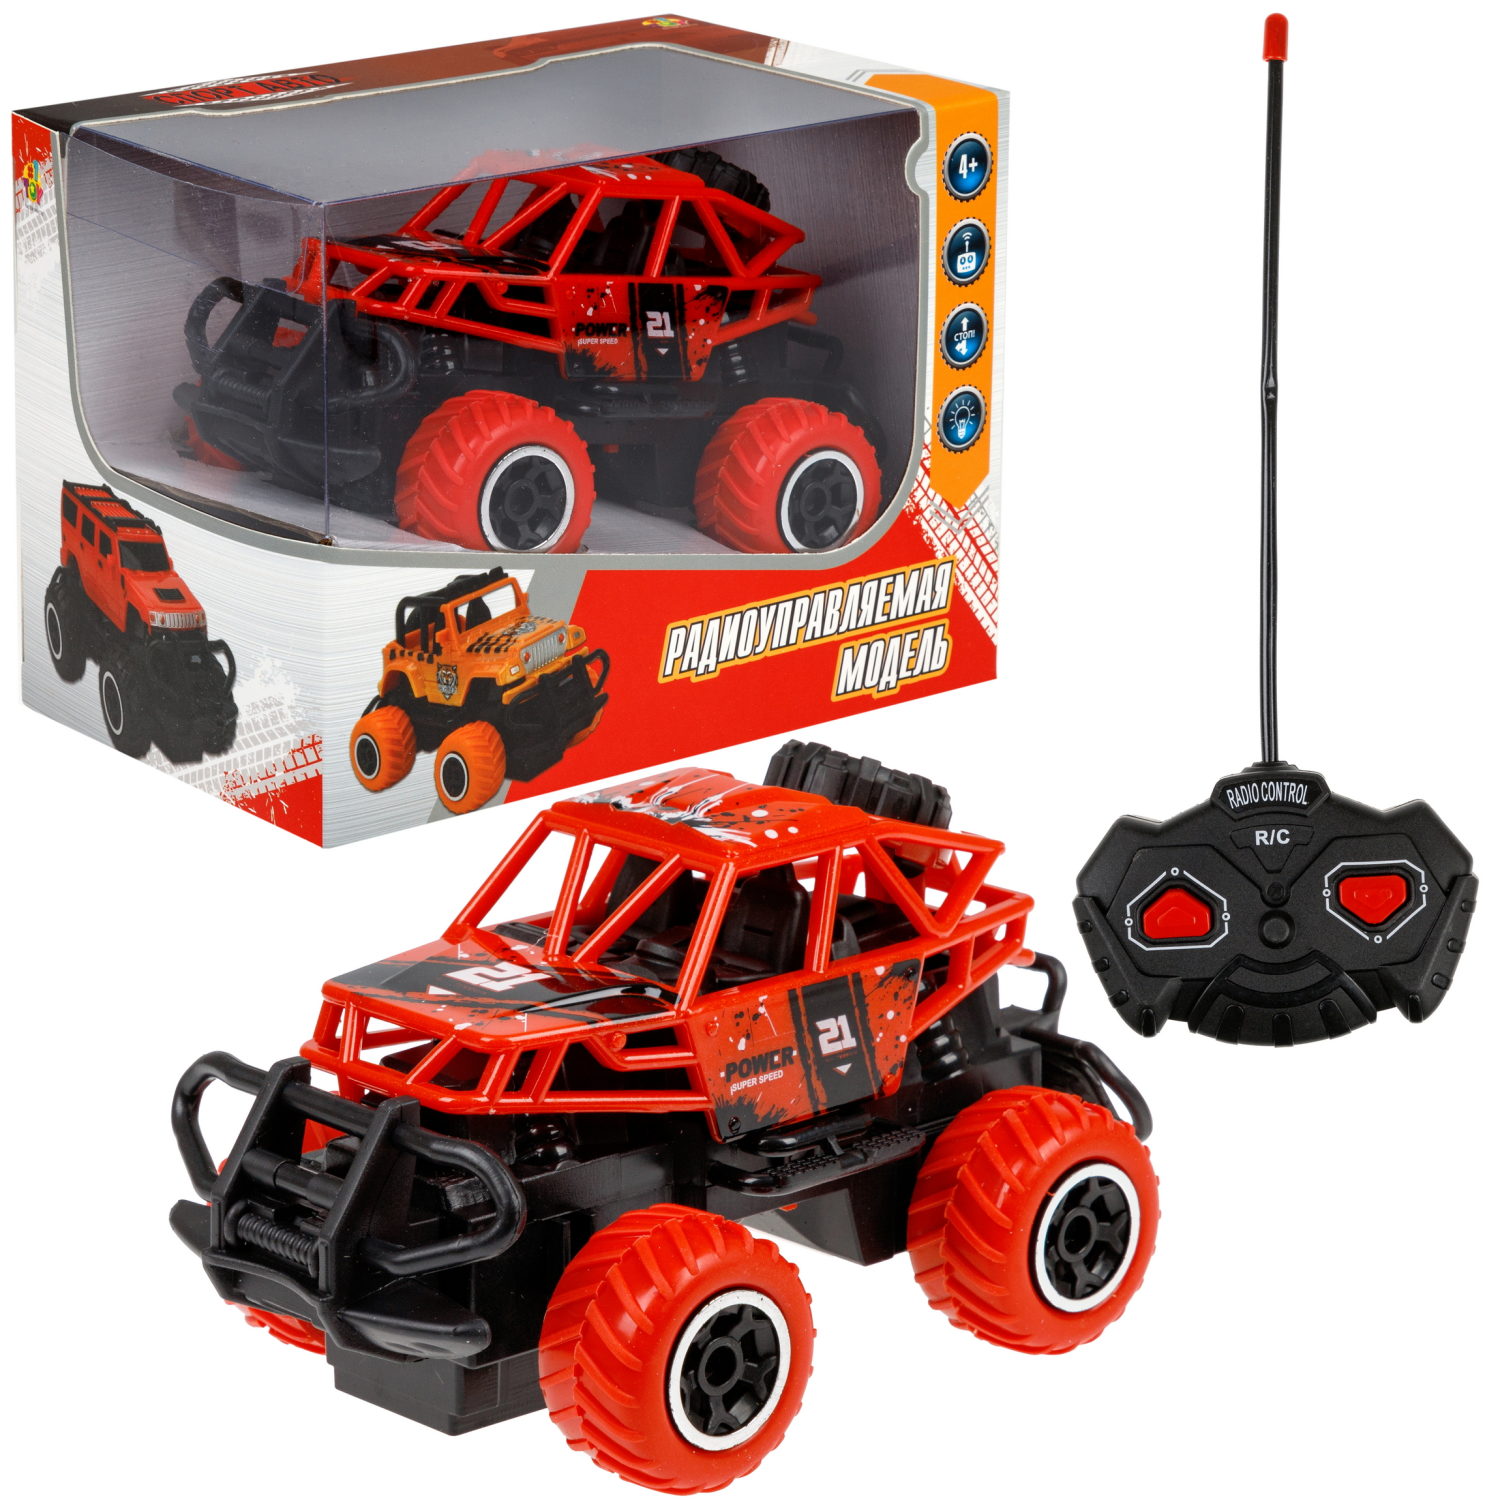 Машинка 1toy Т24277-1 Спортавто багги на радиоуправлении красный машинка на пульте управления s s toys монстр трак мини на радиоуправлении игрушечная